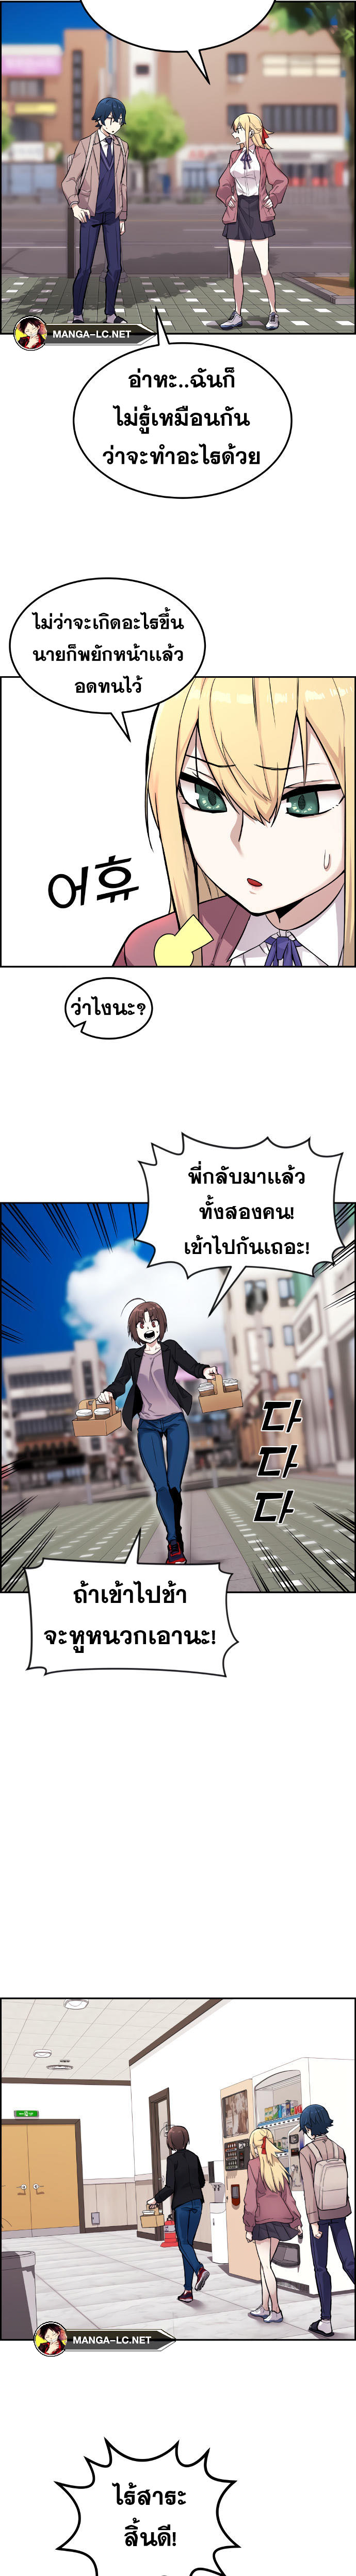 Webtoon Character Na Kang Lim à¸•à¸­à¸™à¸—à¸µà¹ˆ 5 (7)